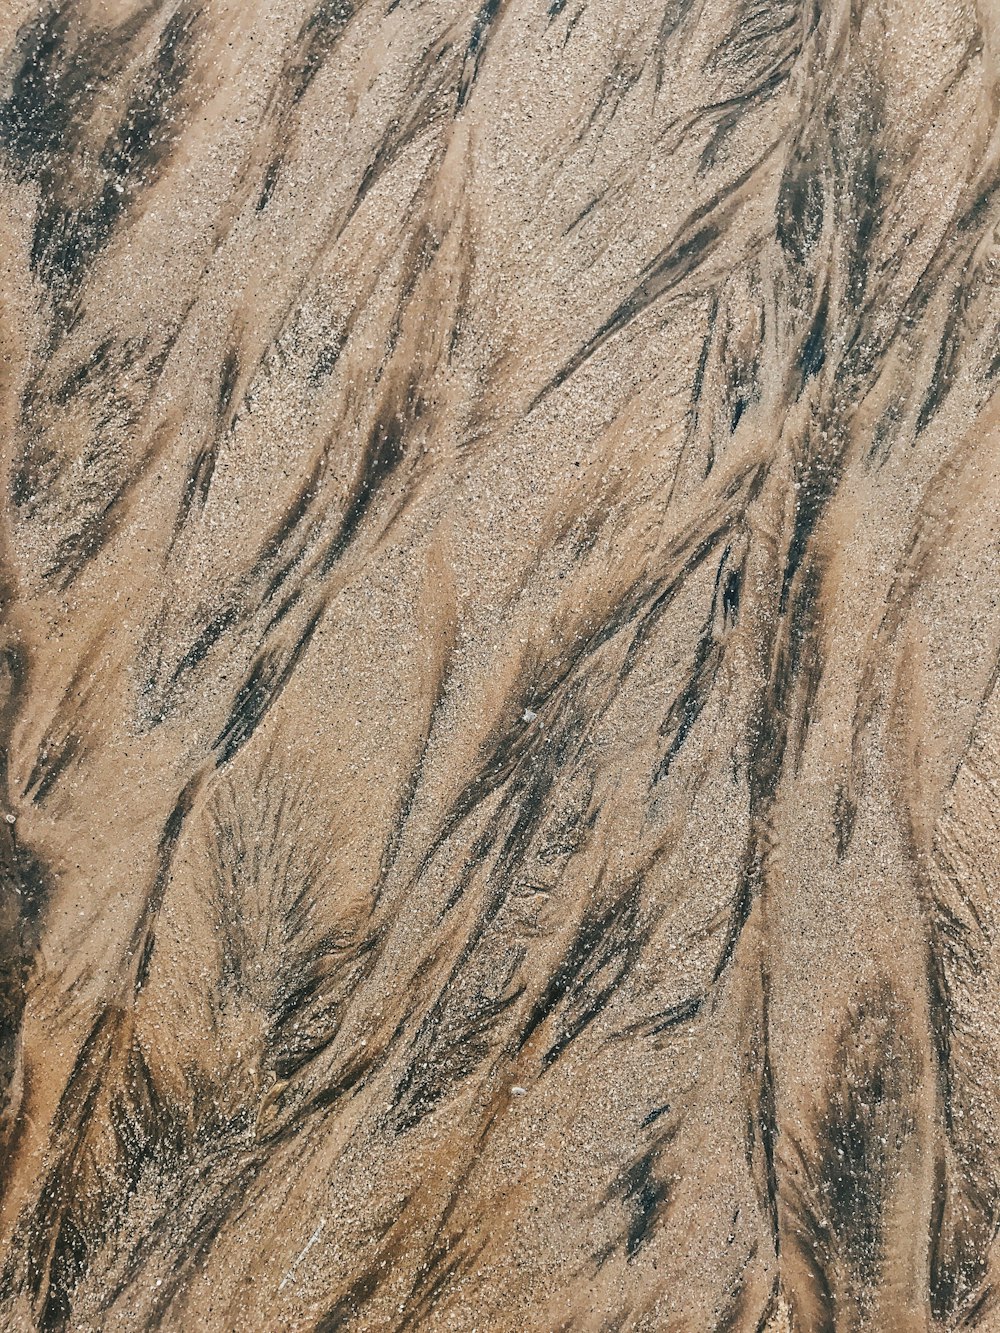 Eine Luftaufnahme eines Sandstrandes mit Wellen